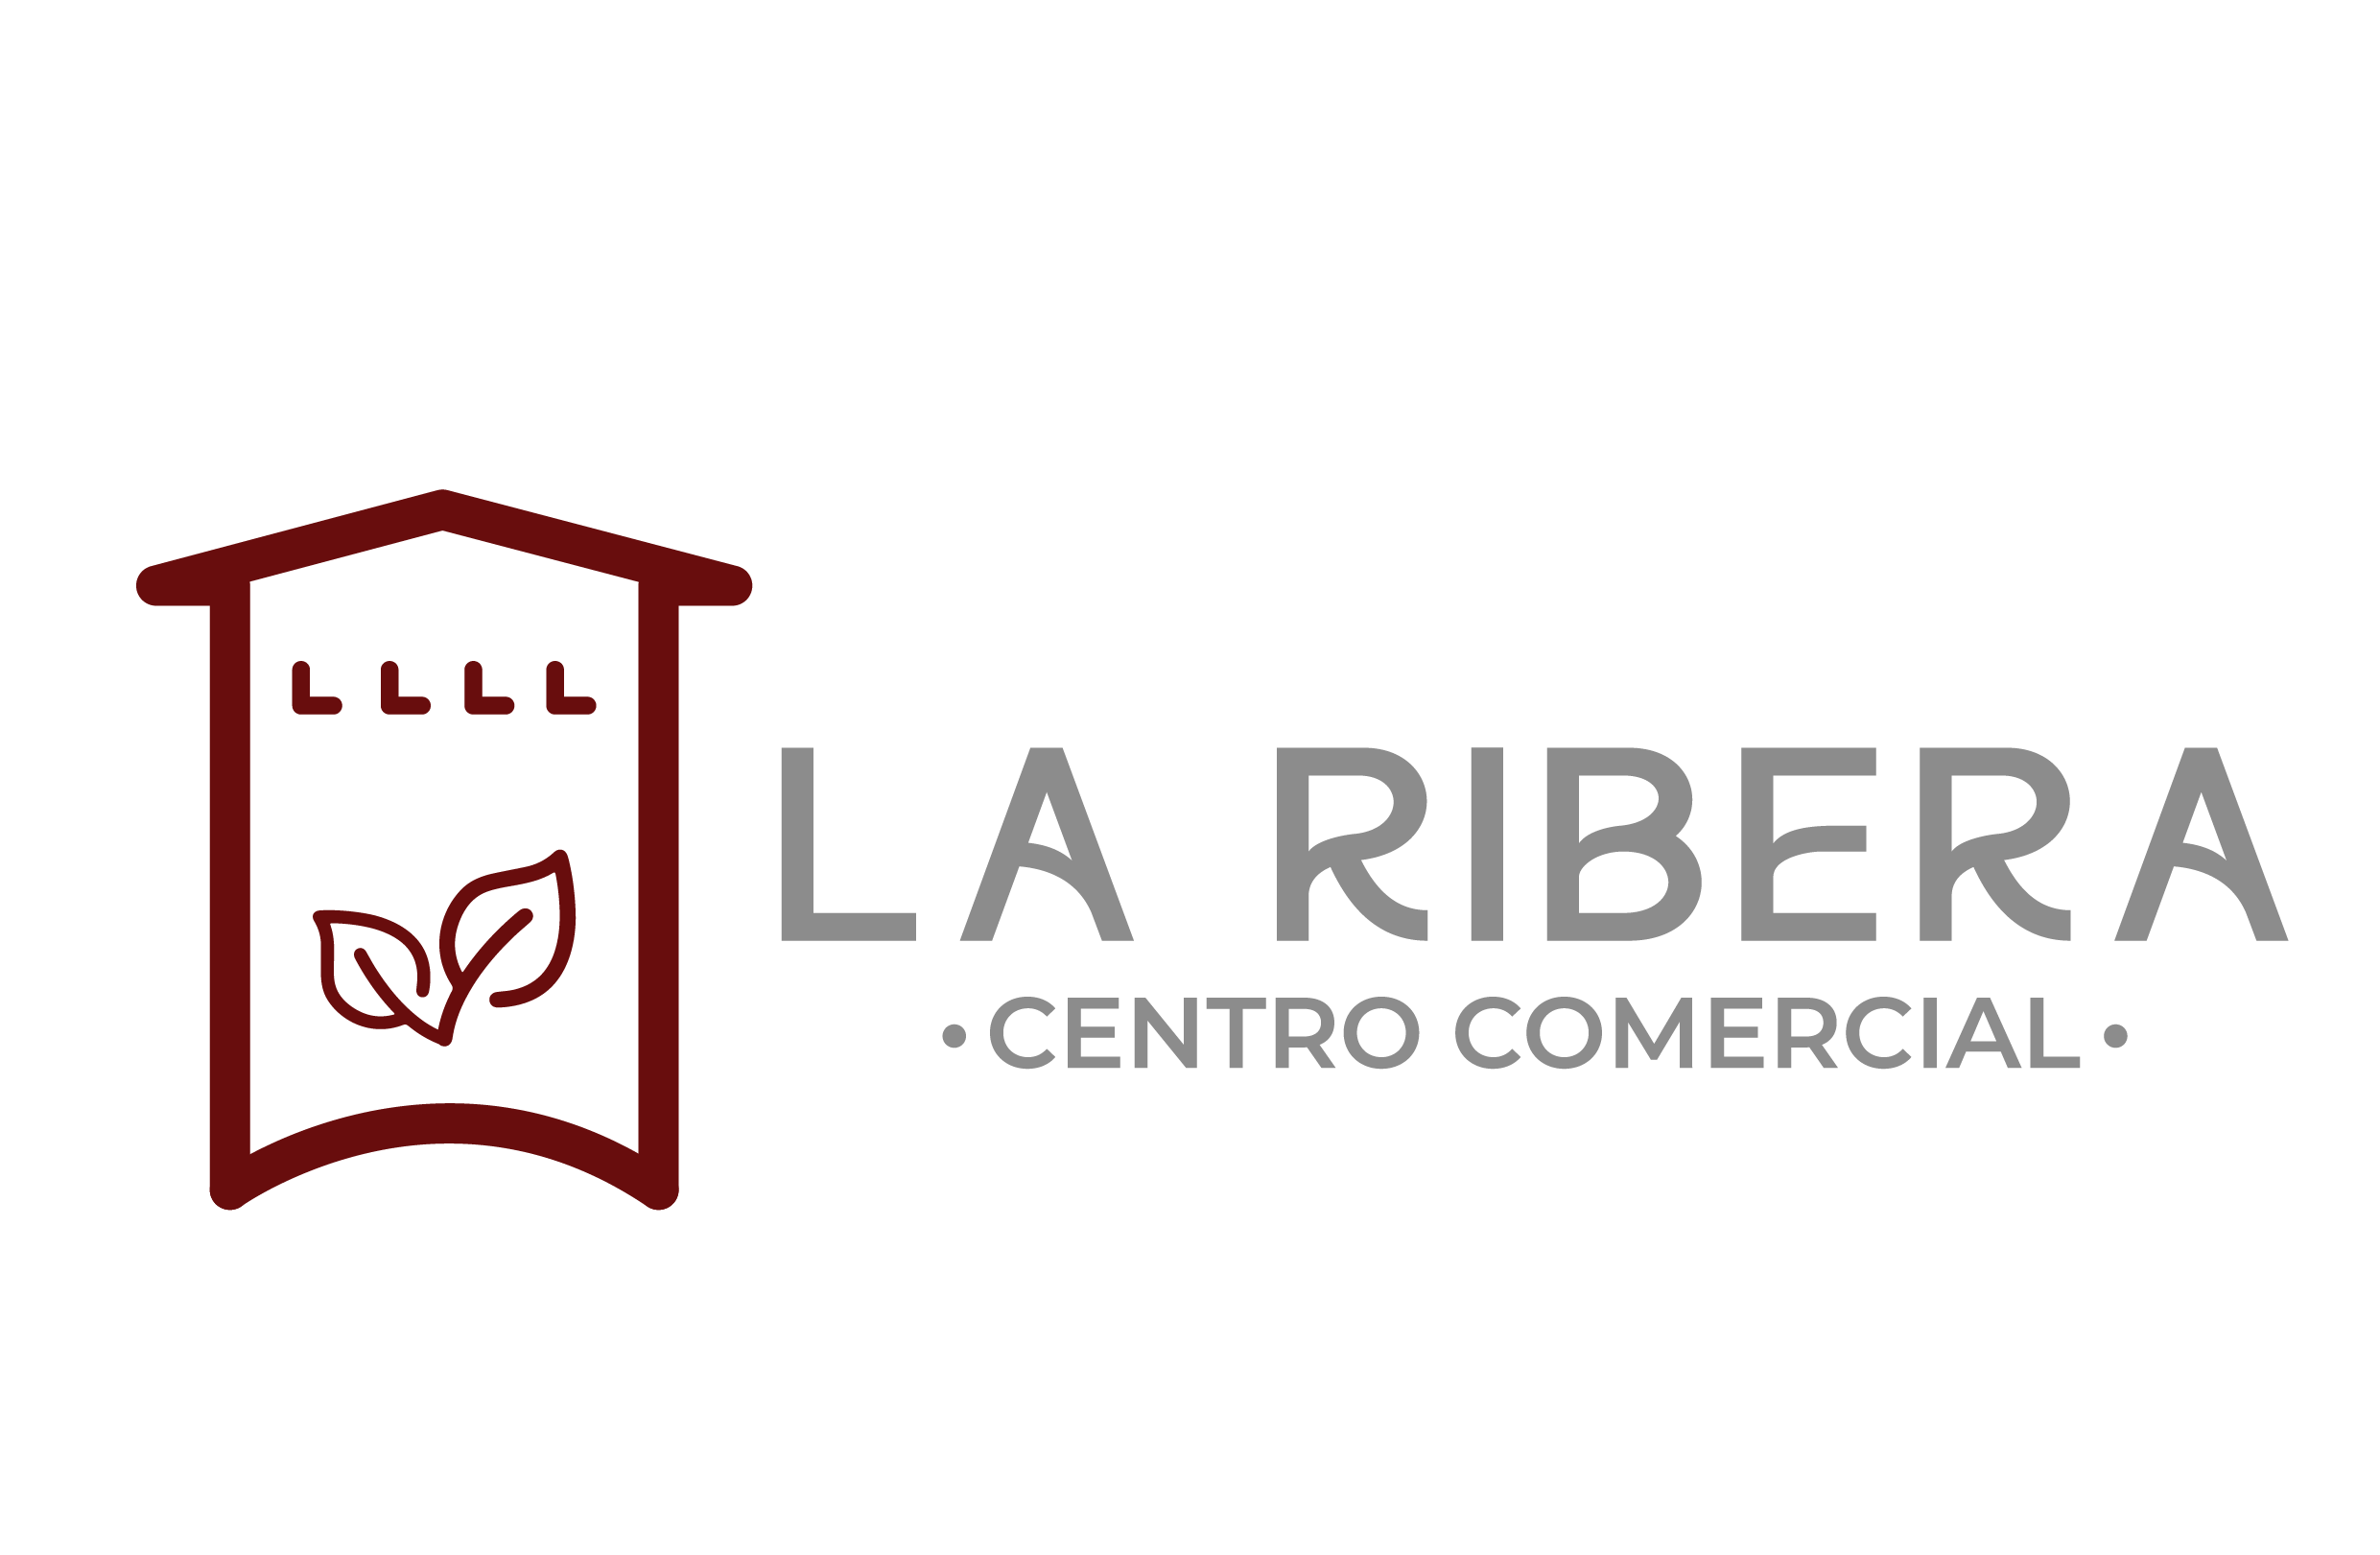 CENTRO COMERCIAL LA RIVERA